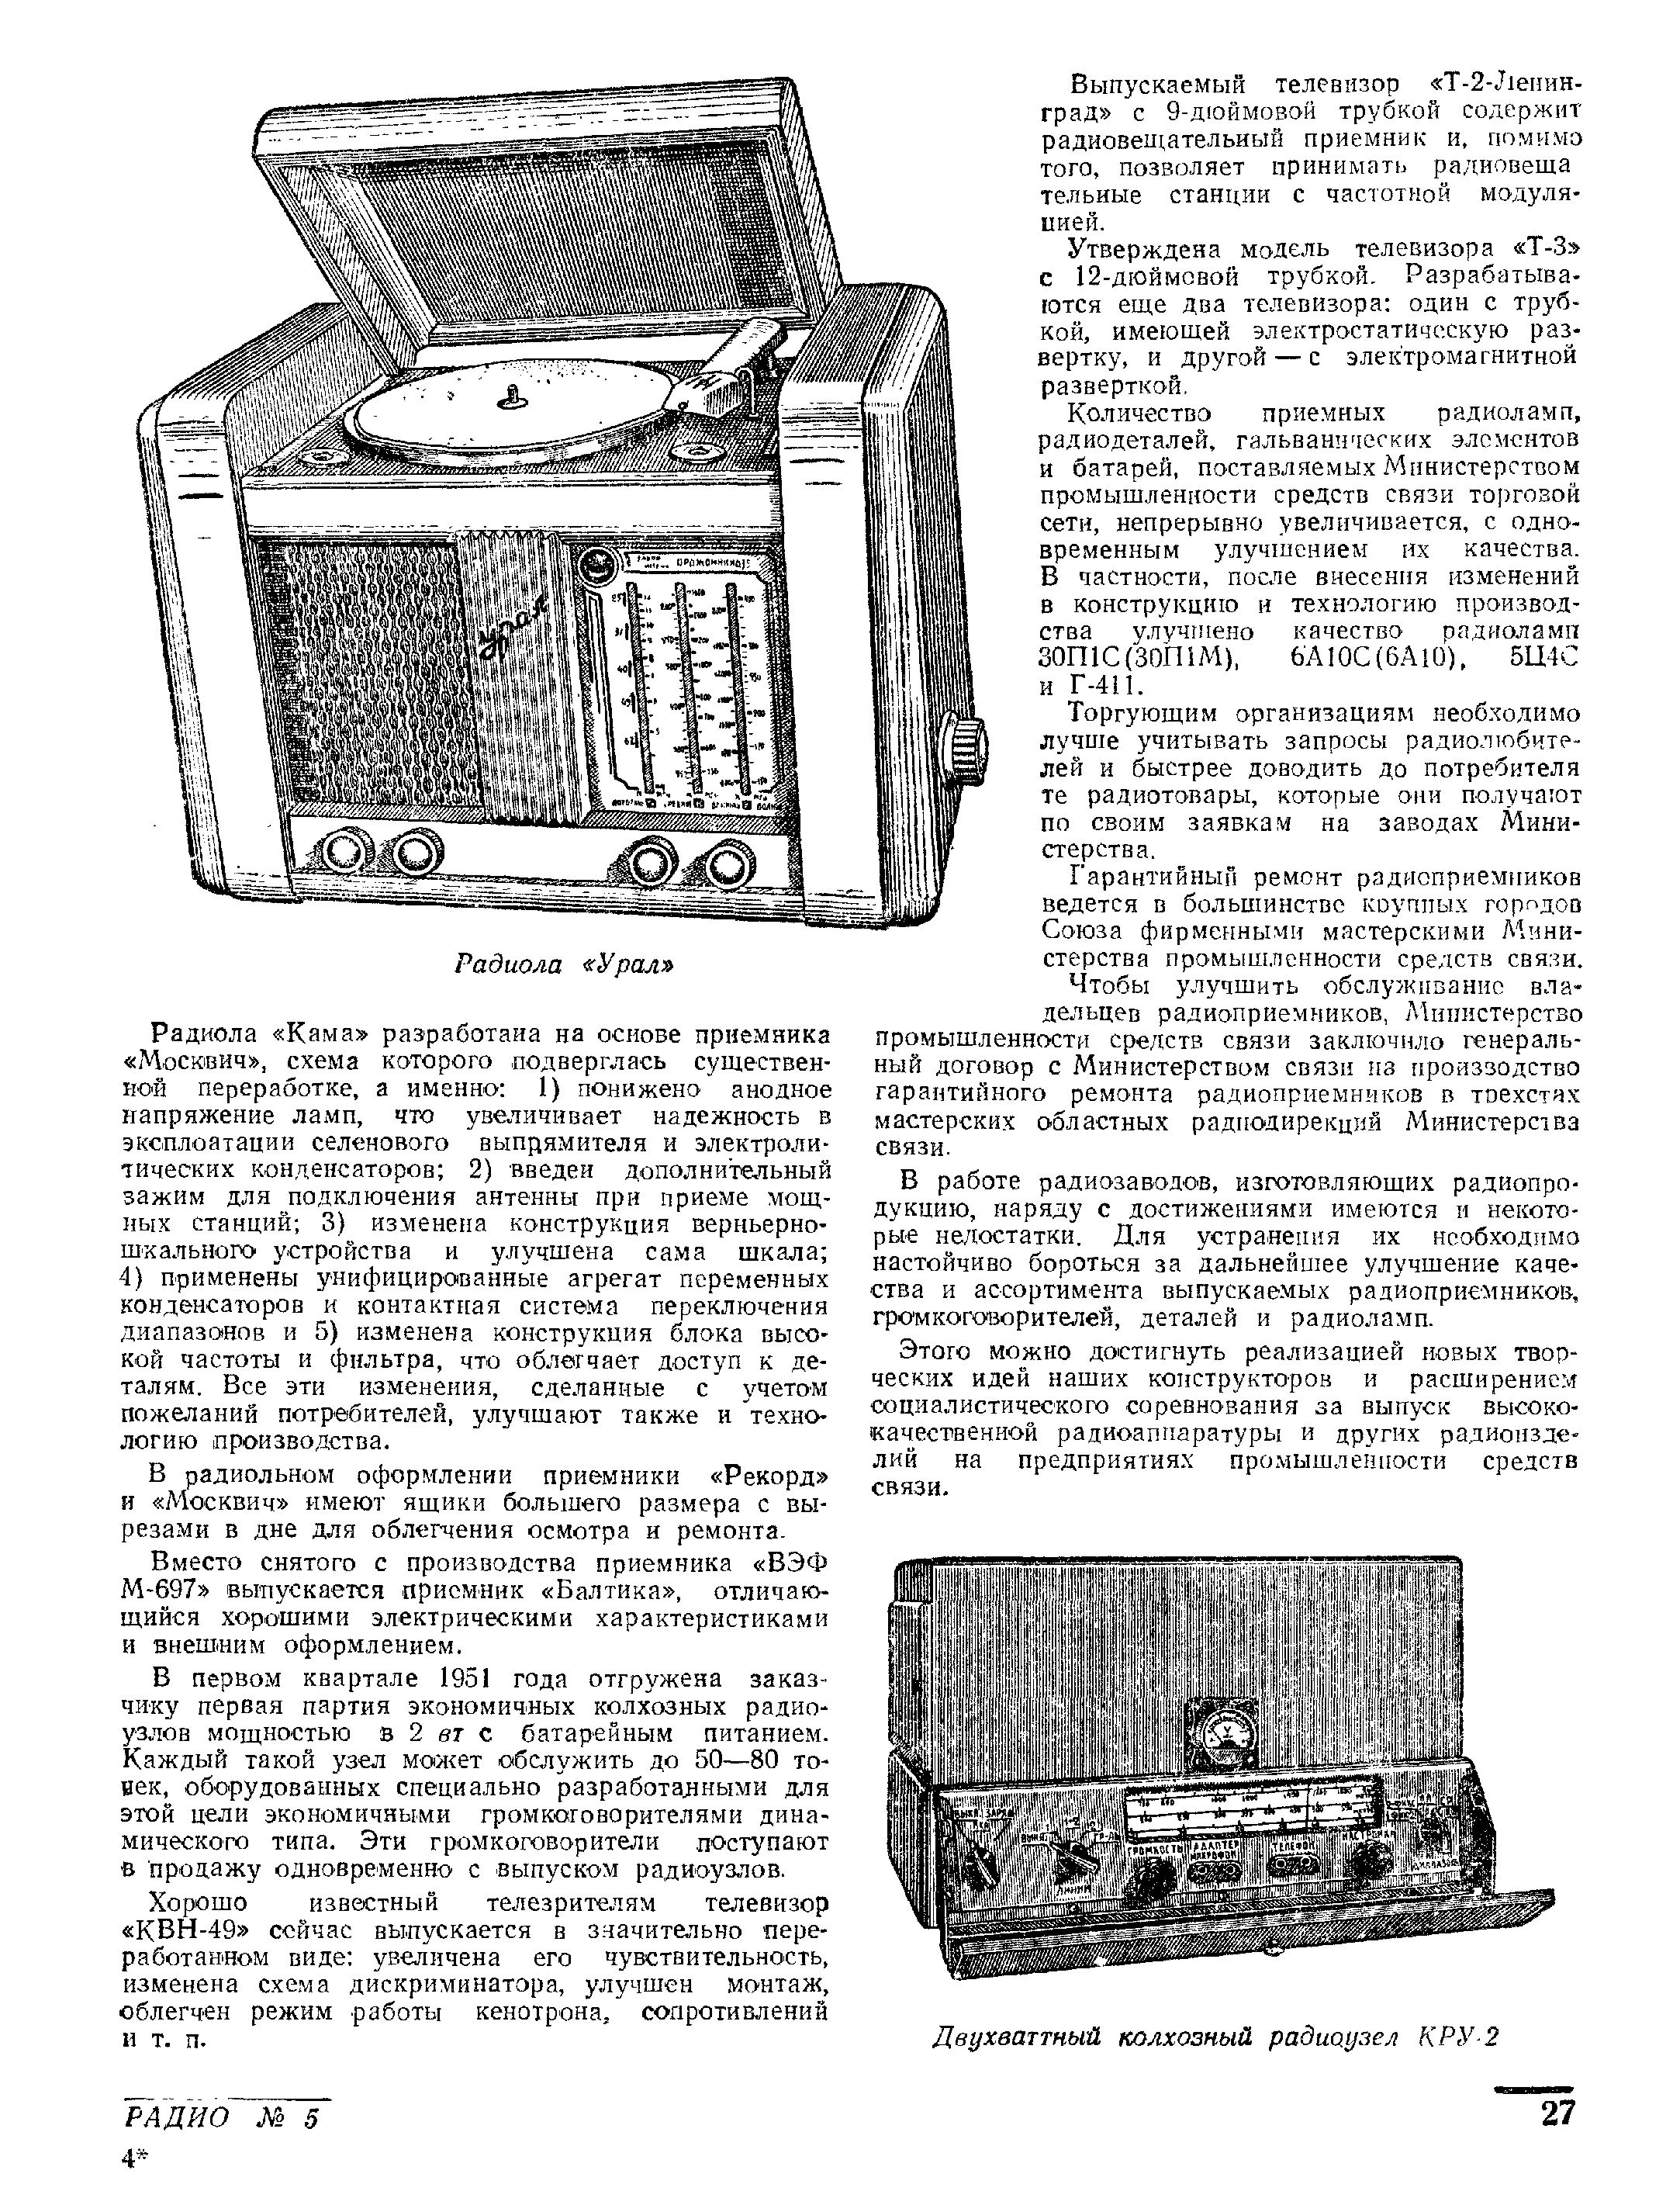 Отечественная радиопромышленность в 1951 году